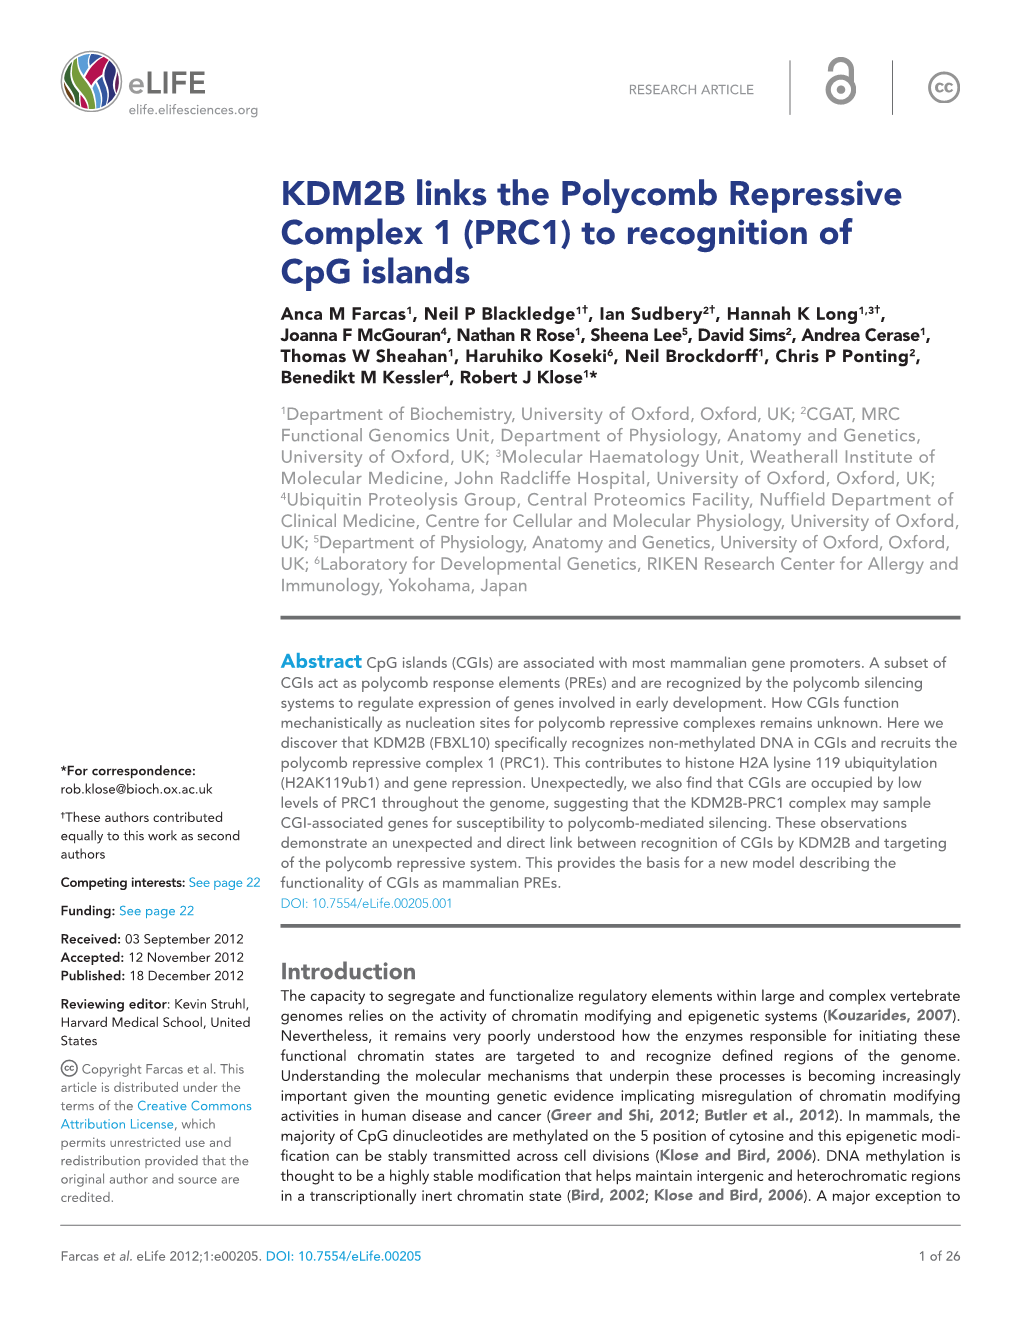 KDM2B Links the Polycomb Repressive Complex 1 (PRC1)